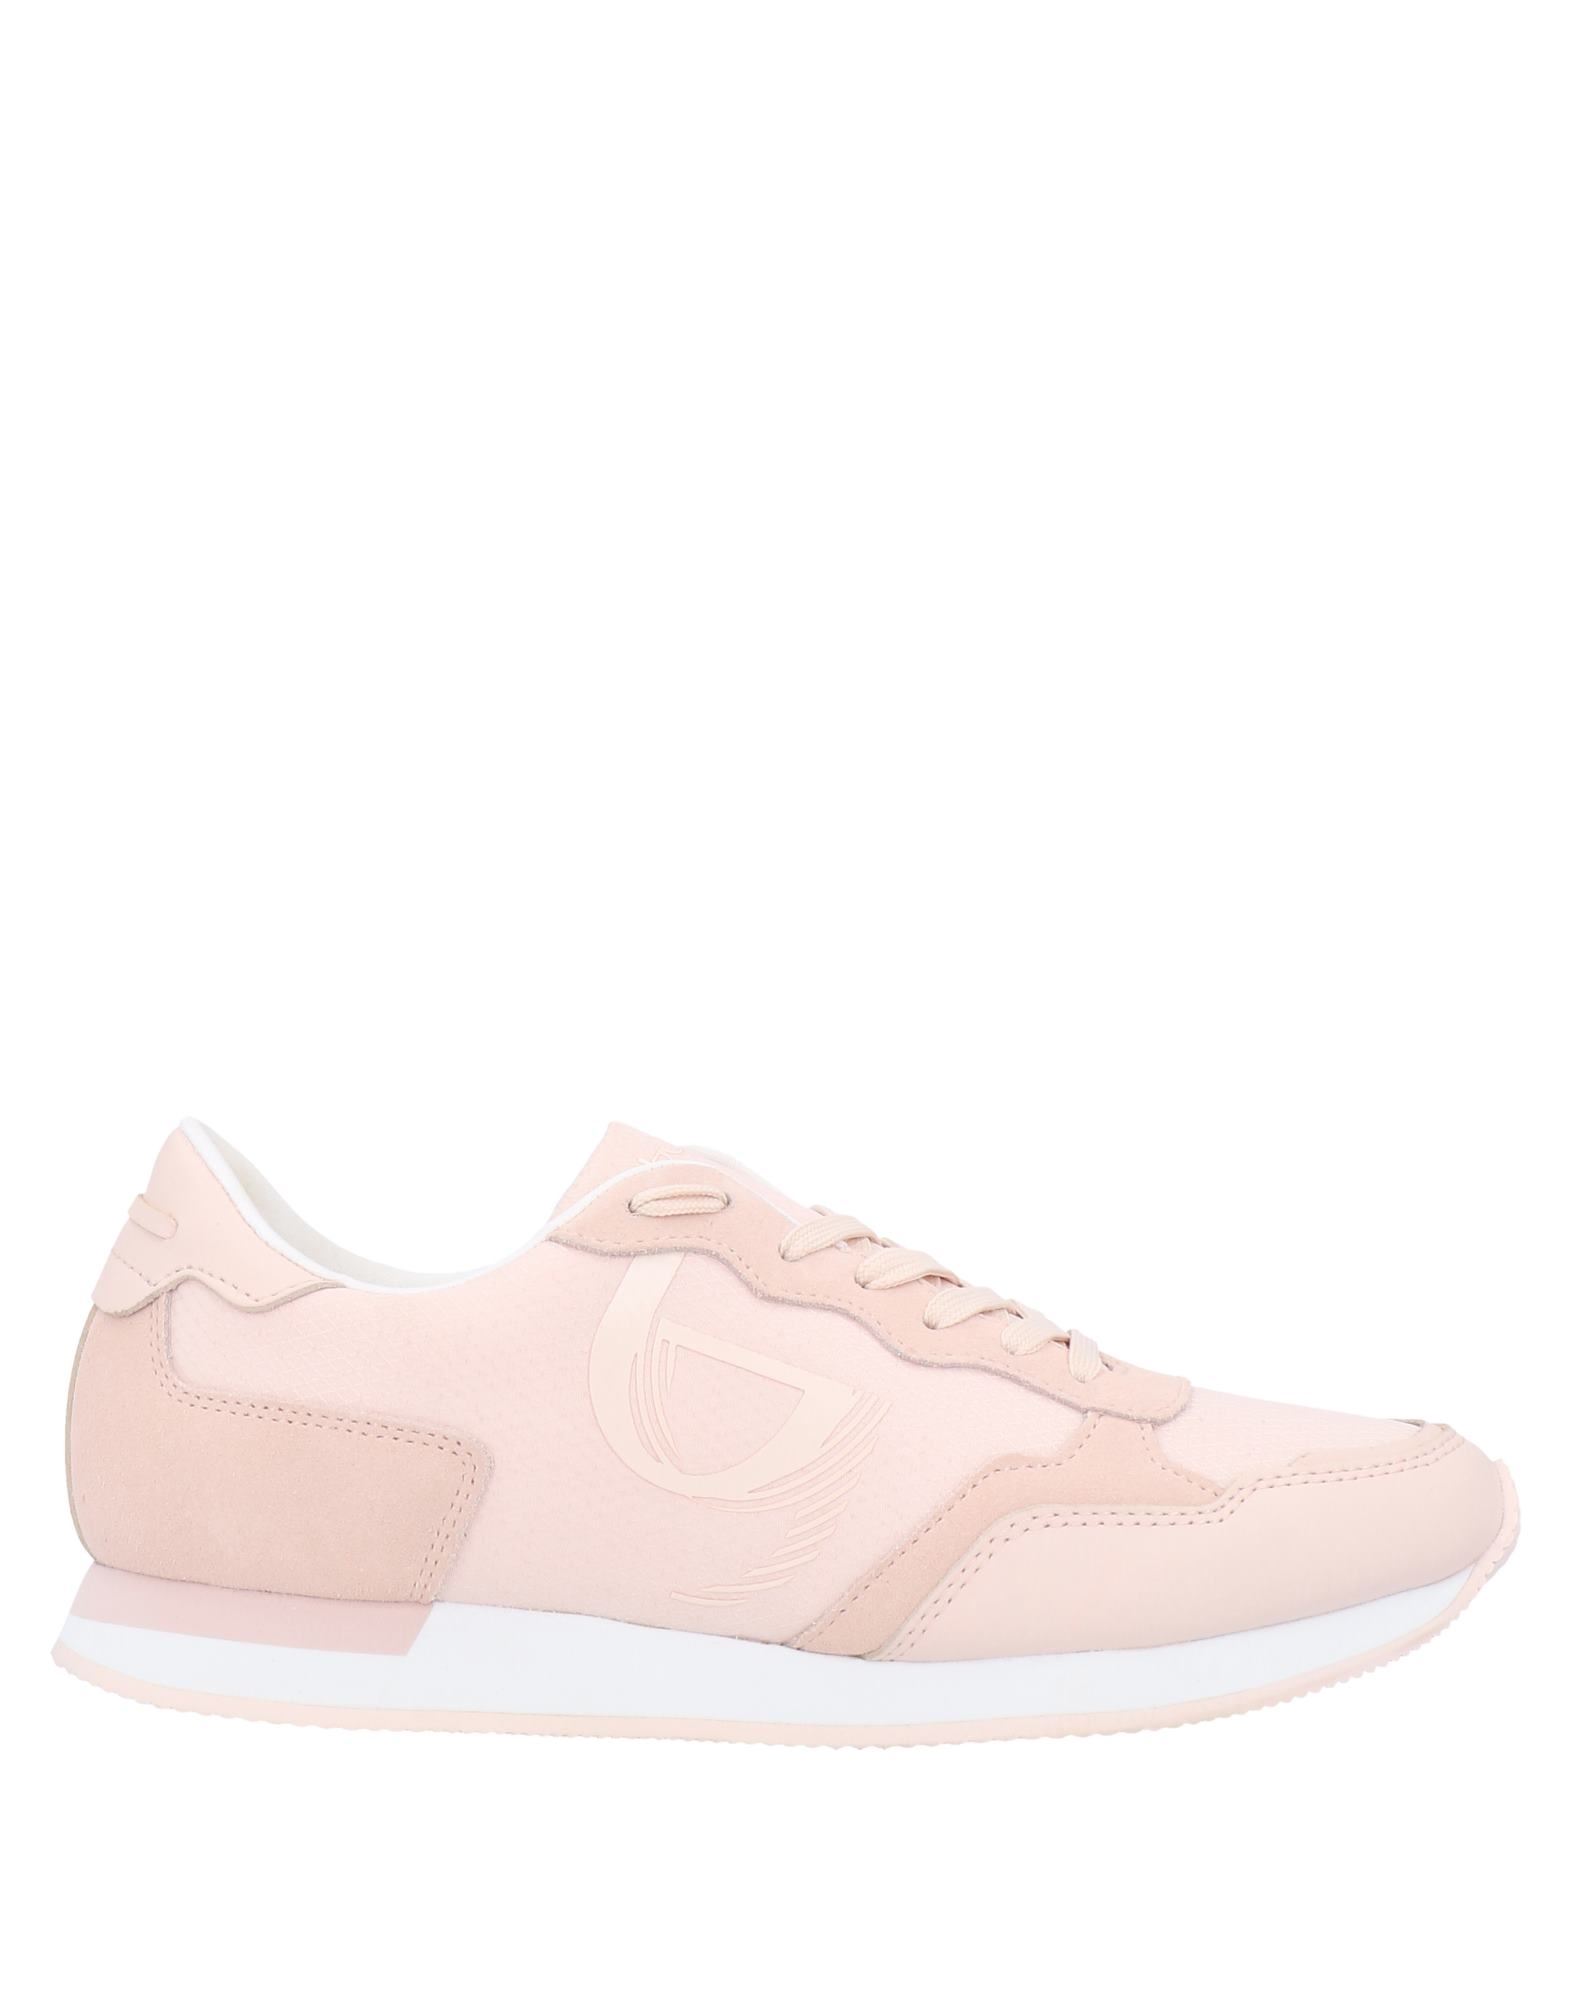 Byblos Sneakers In Pale Pink